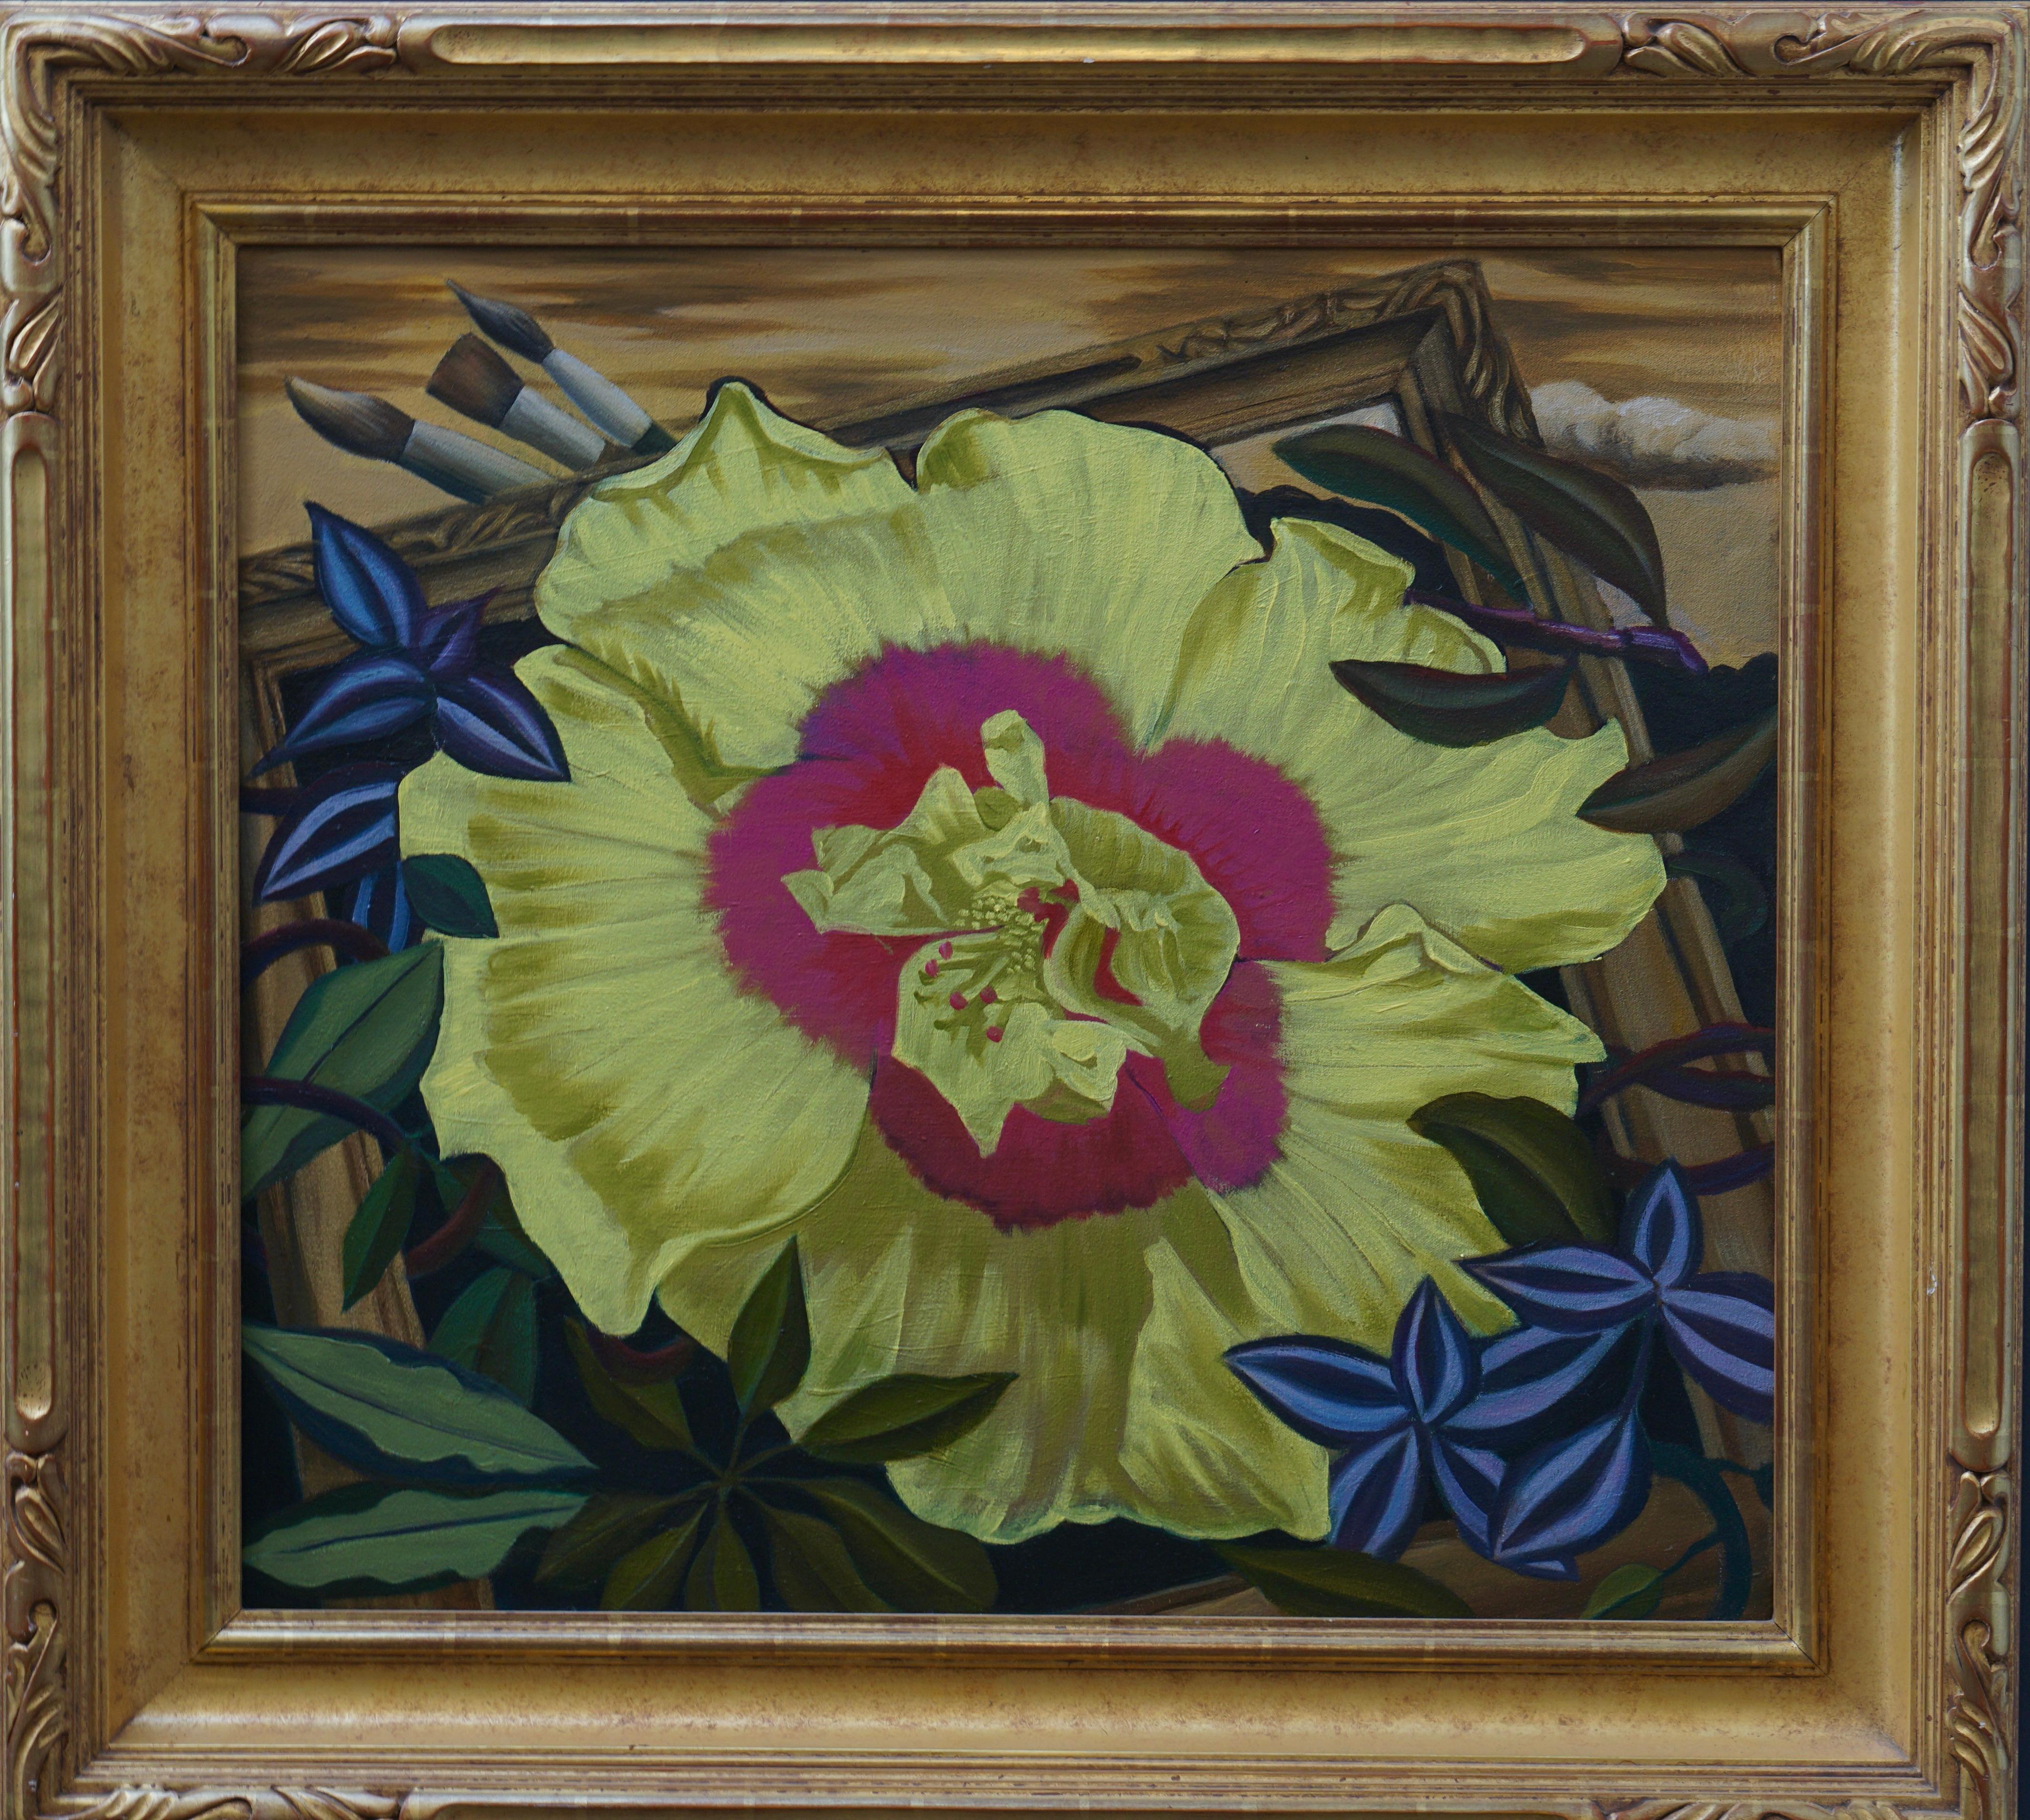 Leuchtend gelbe Mohnblume mit einem subtilen Schatten in der Mitte, umgeben von reich verzierten dunklen Blättern, die die Mohnblume hervorheben. Er wird von einem Rahmen umgeben, in dem die Pinsel der Künstler im Hintergrund erscheinen.
Inklusive